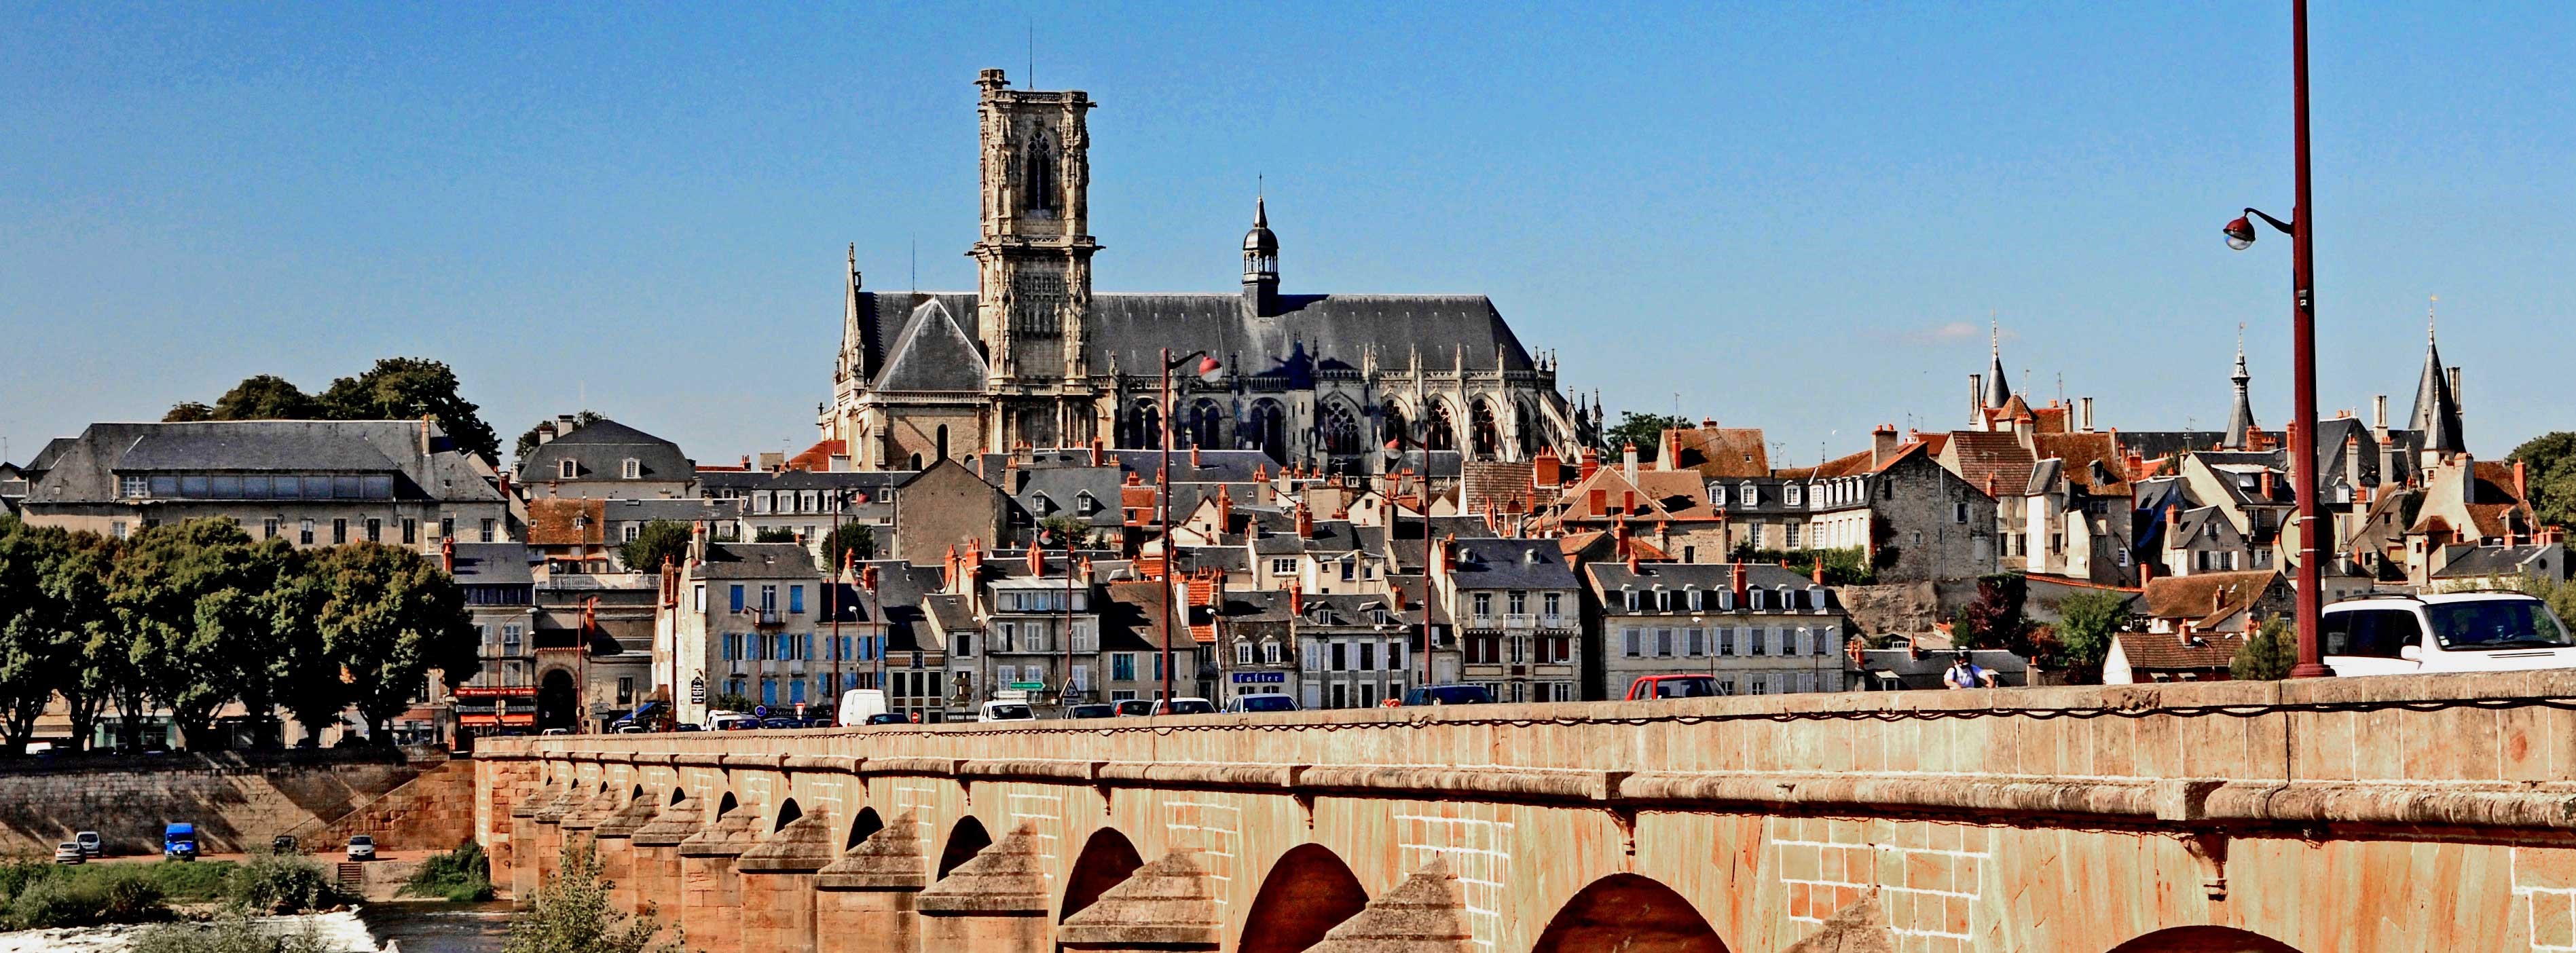 Vue sur Nevers et le pont depuis la rive de la Loire côté Sermoise